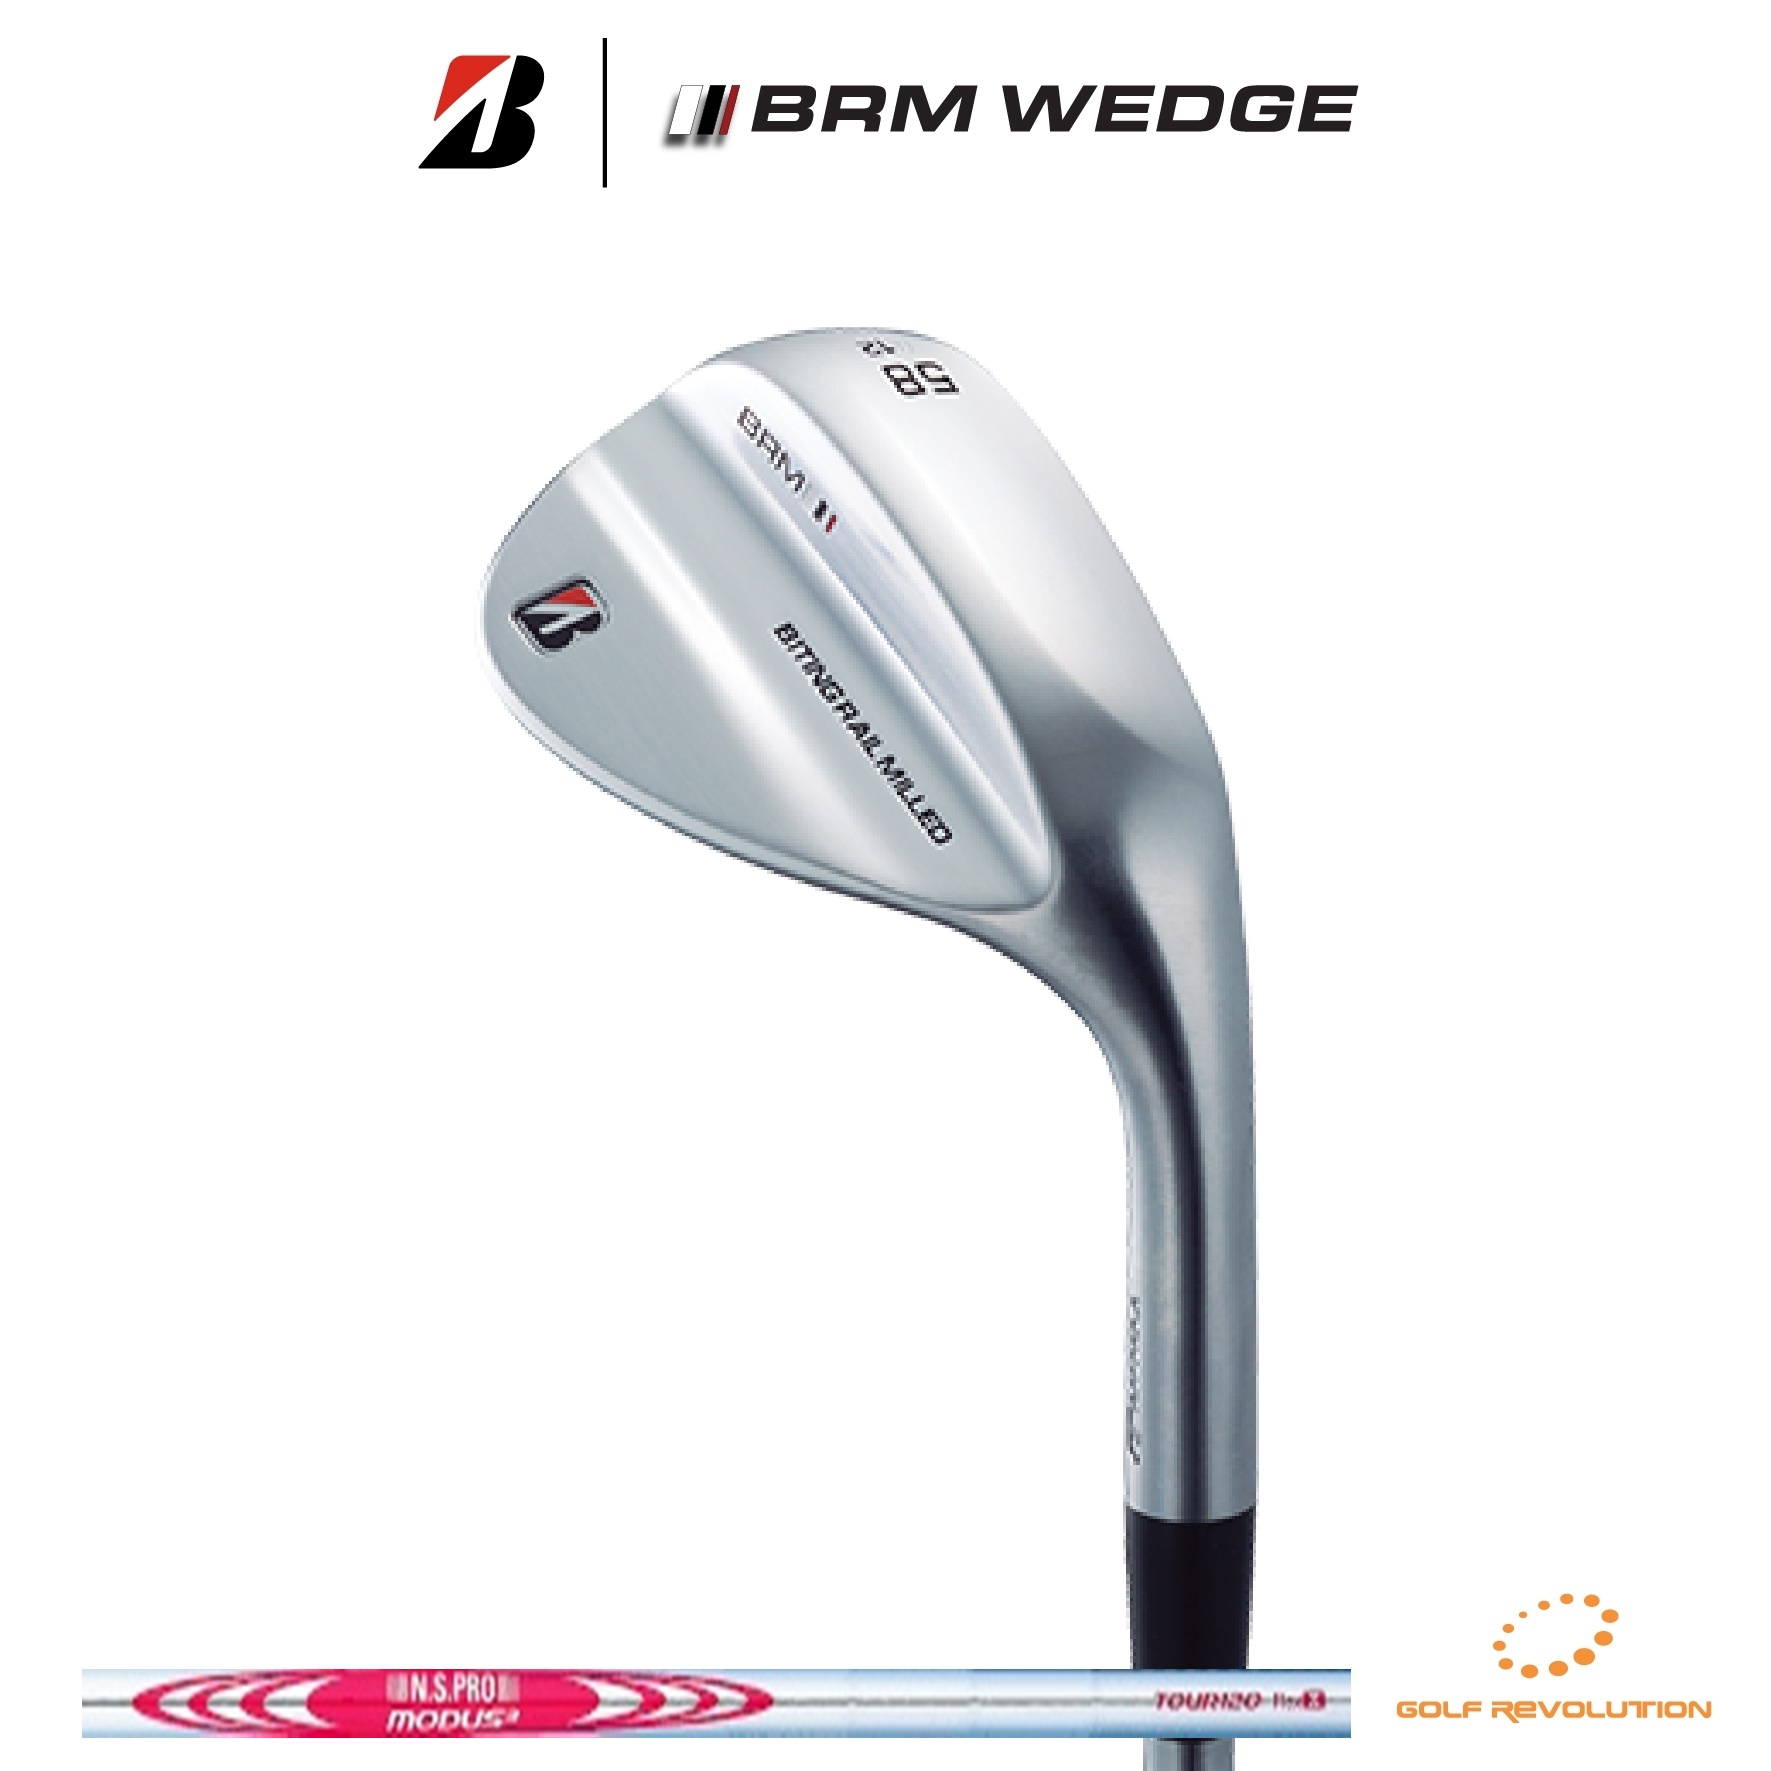 เวดจ์ Bridgestone golf - NEW Tour B BRM wedge with NS.Pro Modus120 steel shaft